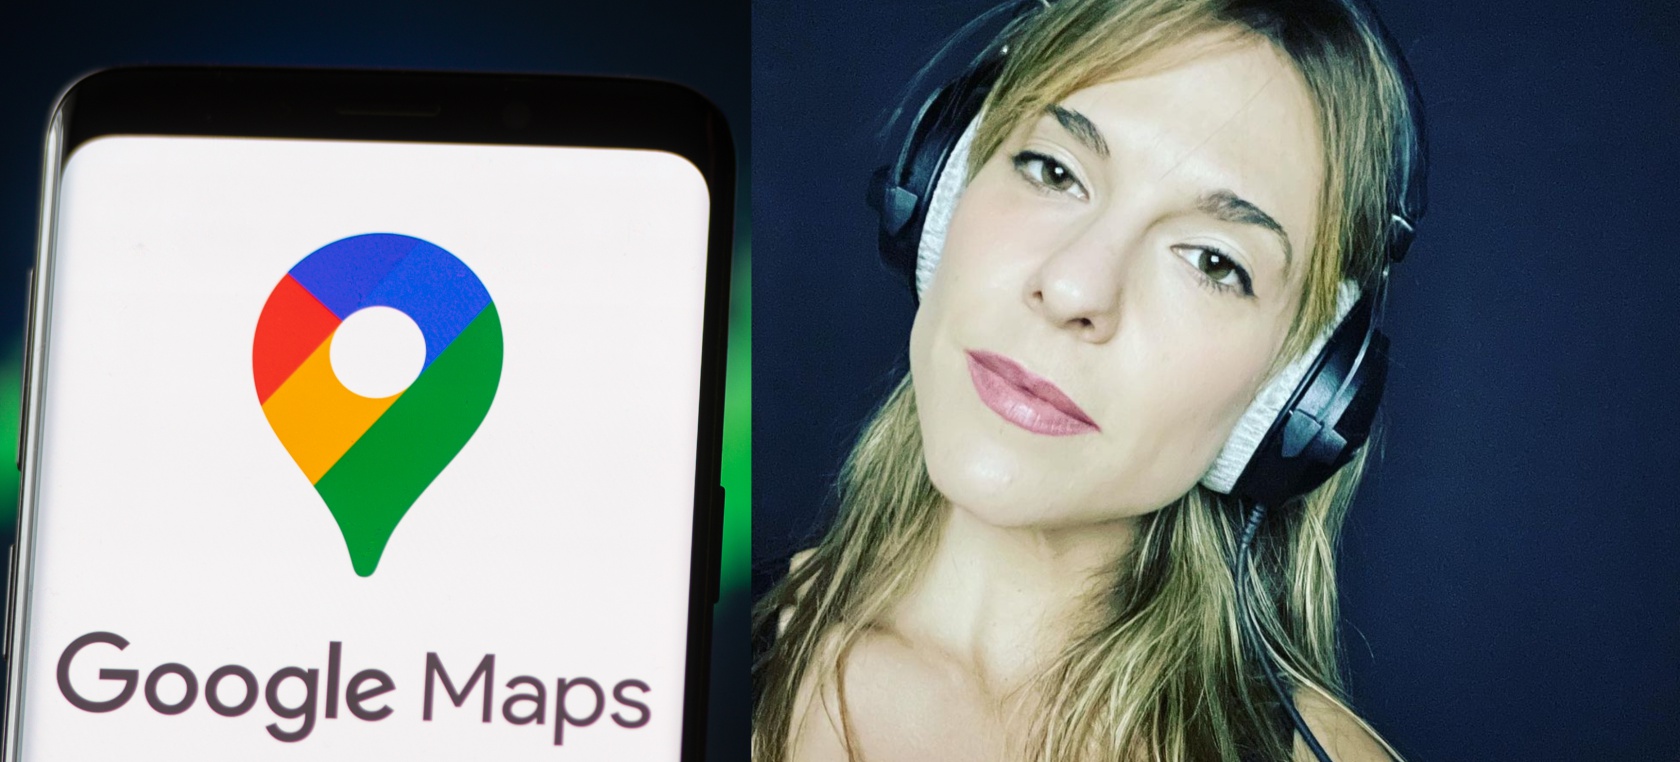 La cantante que pone voz a Google Maps revoluciona las redes con su último vídeo